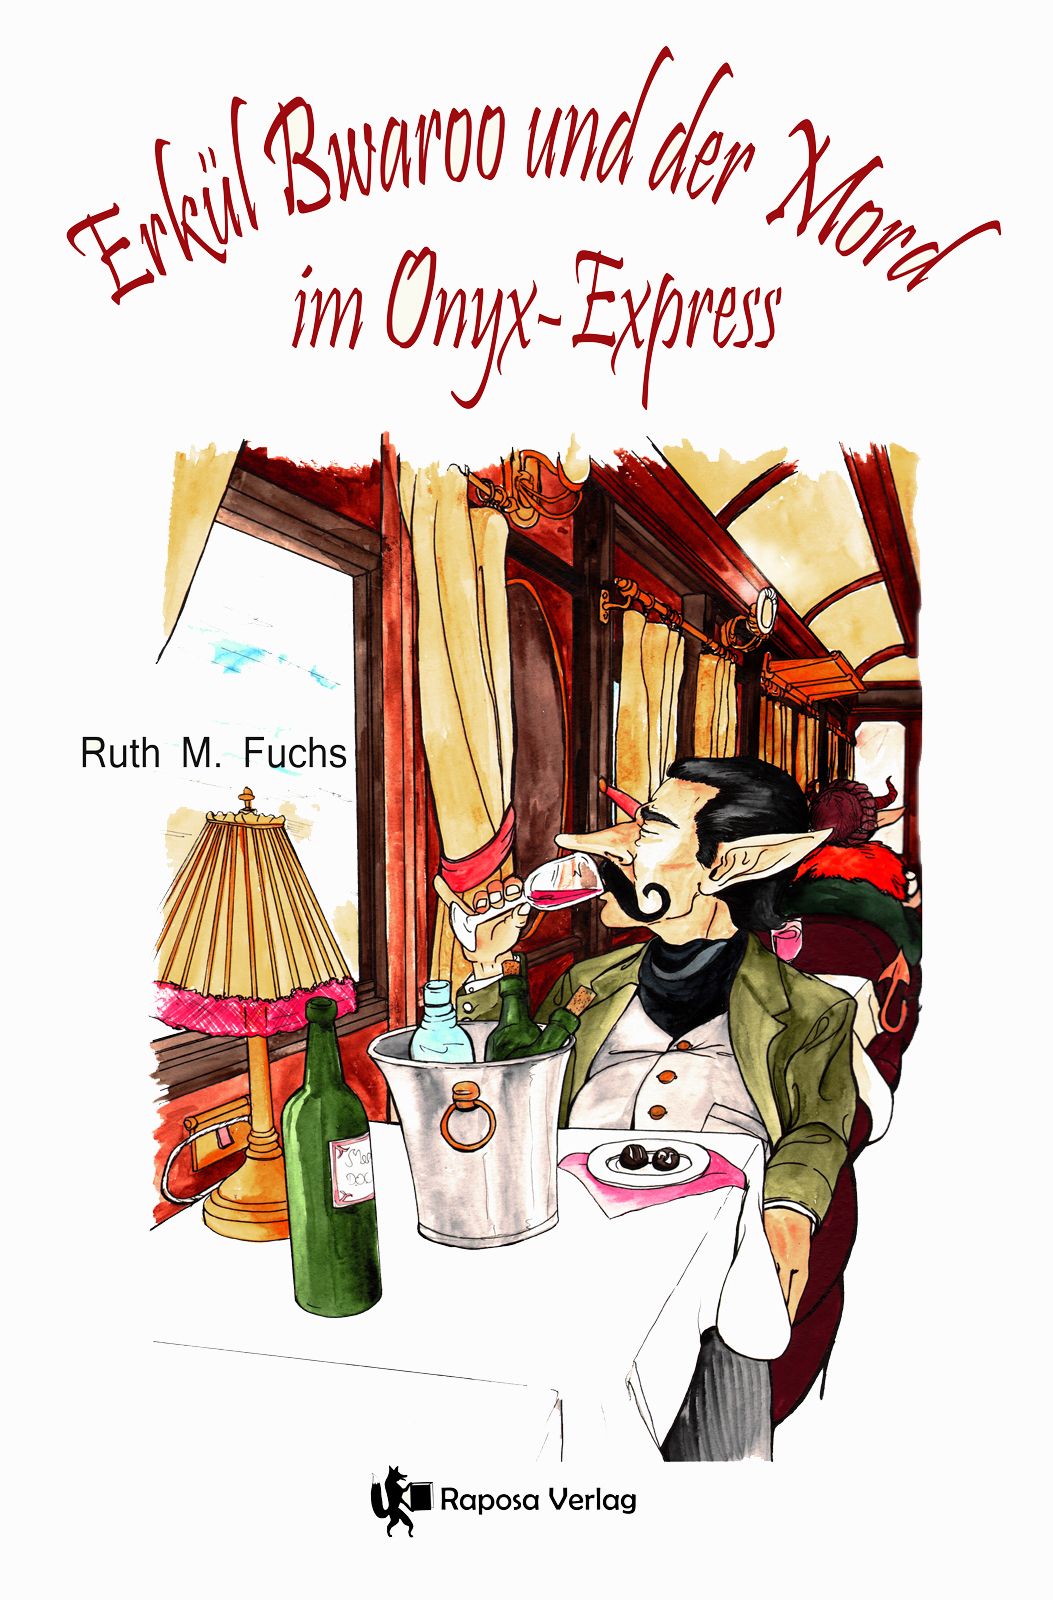 Erkül Bwaroo und der Mord im Onyx-Express Profilbild